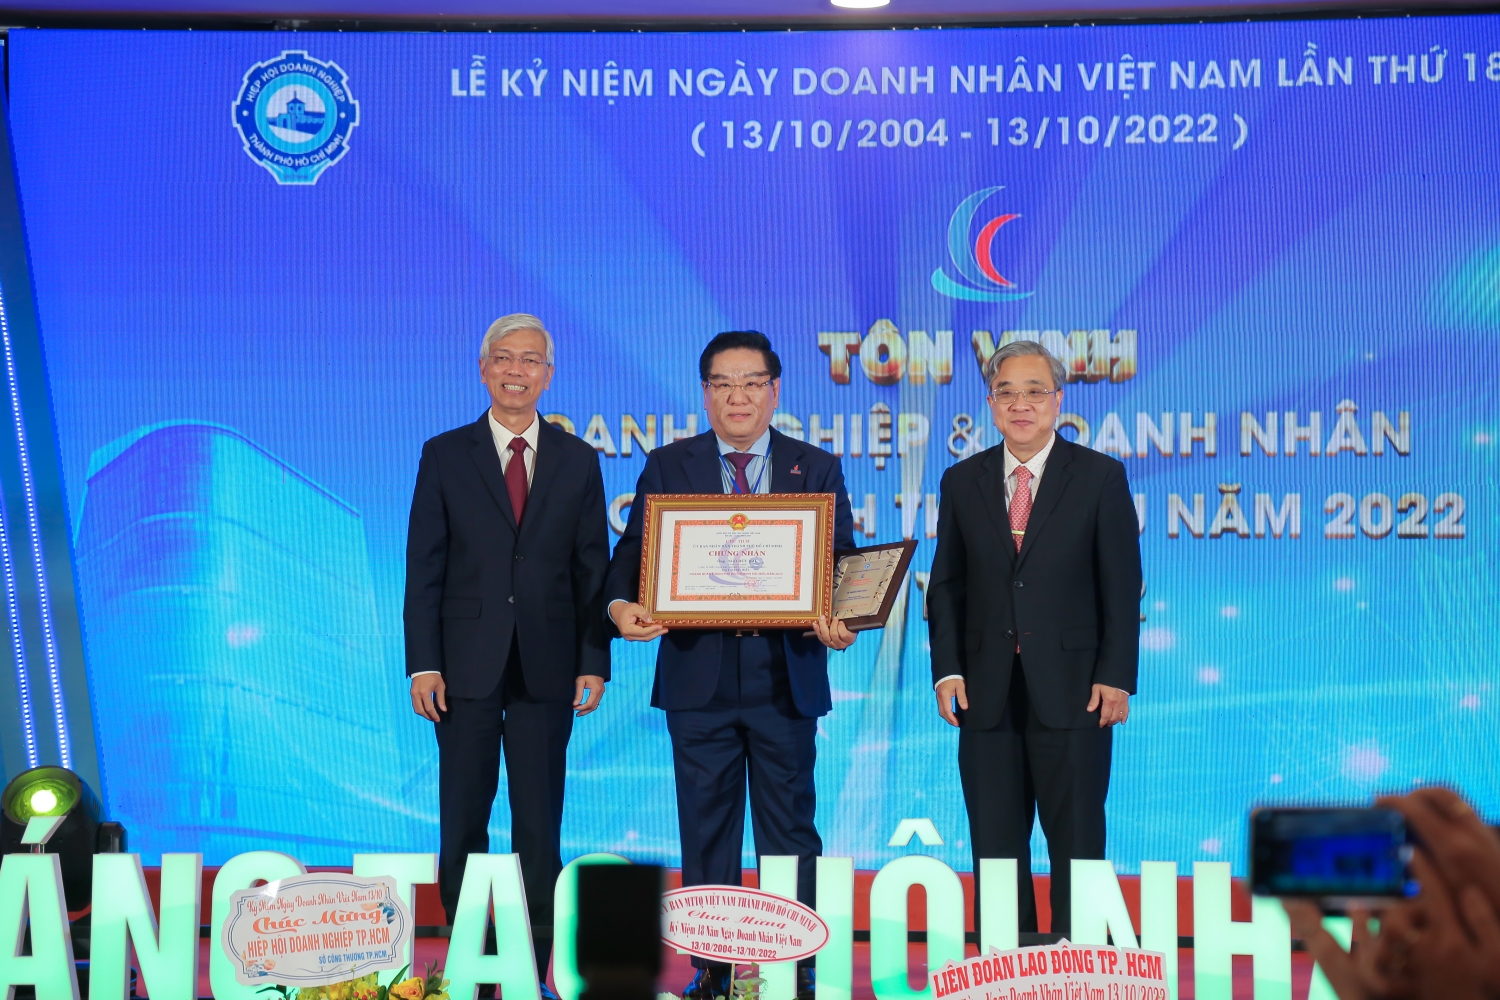 BIENDONG POC được tôn vinh Doanh nghiệp tiêu biểu của TP. Hồ Chí Minh năm 2022